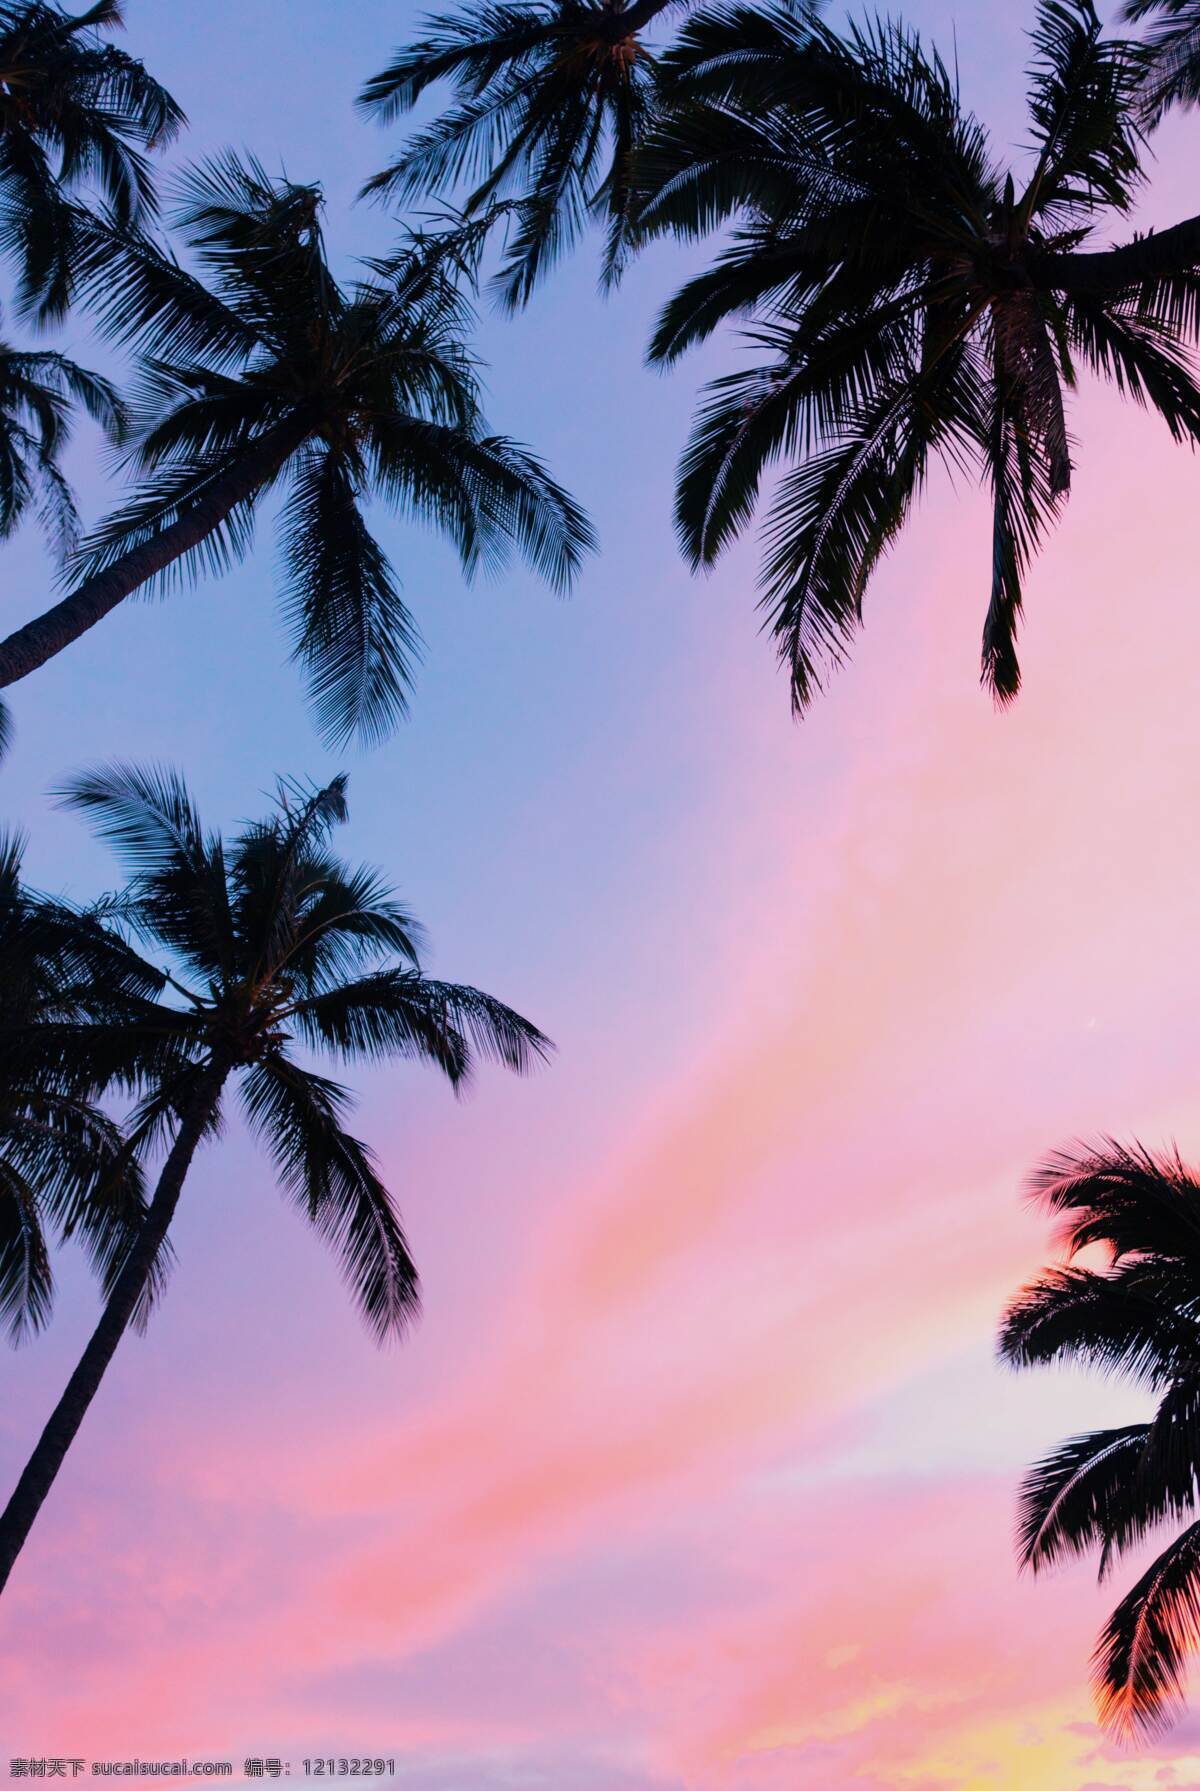 夏威夷图片 夏威夷 夏威夷风景 海滩 沙滩 棕榈树 海岛 海底 海 海浪 风景 海龟 南瓜 山 山脉 飞机舱 飞机窗 彩虹 菠萝 鸡蛋花 蜥蜴 小蜥蜴 车 汽车 国外美丽风光